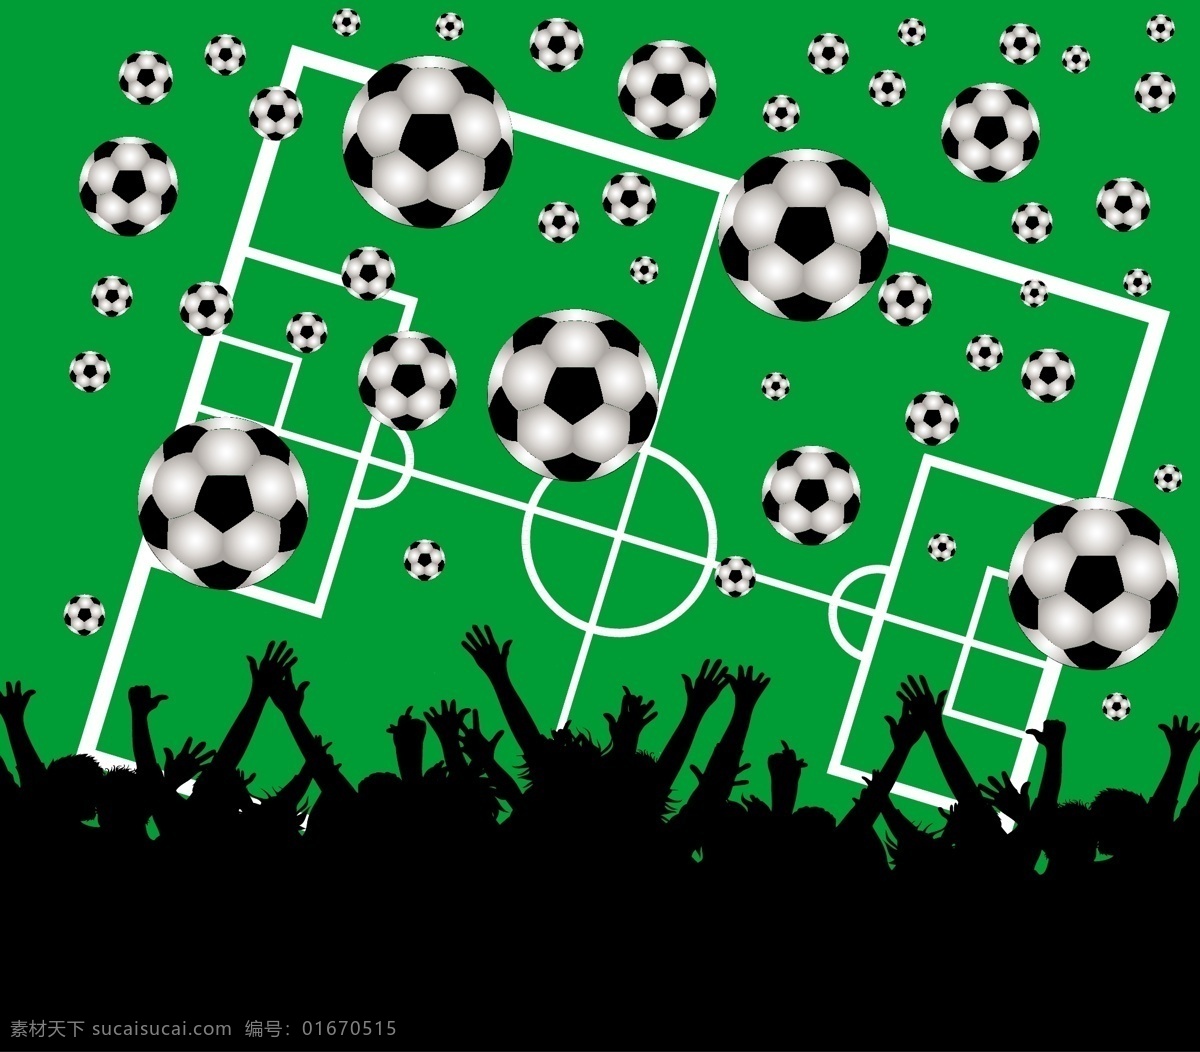 绿色 球场 球迷 剪影 背景 模板下载 人物剪影 世界杯 巴西 足球 体育运动 生活百科 矢量素材